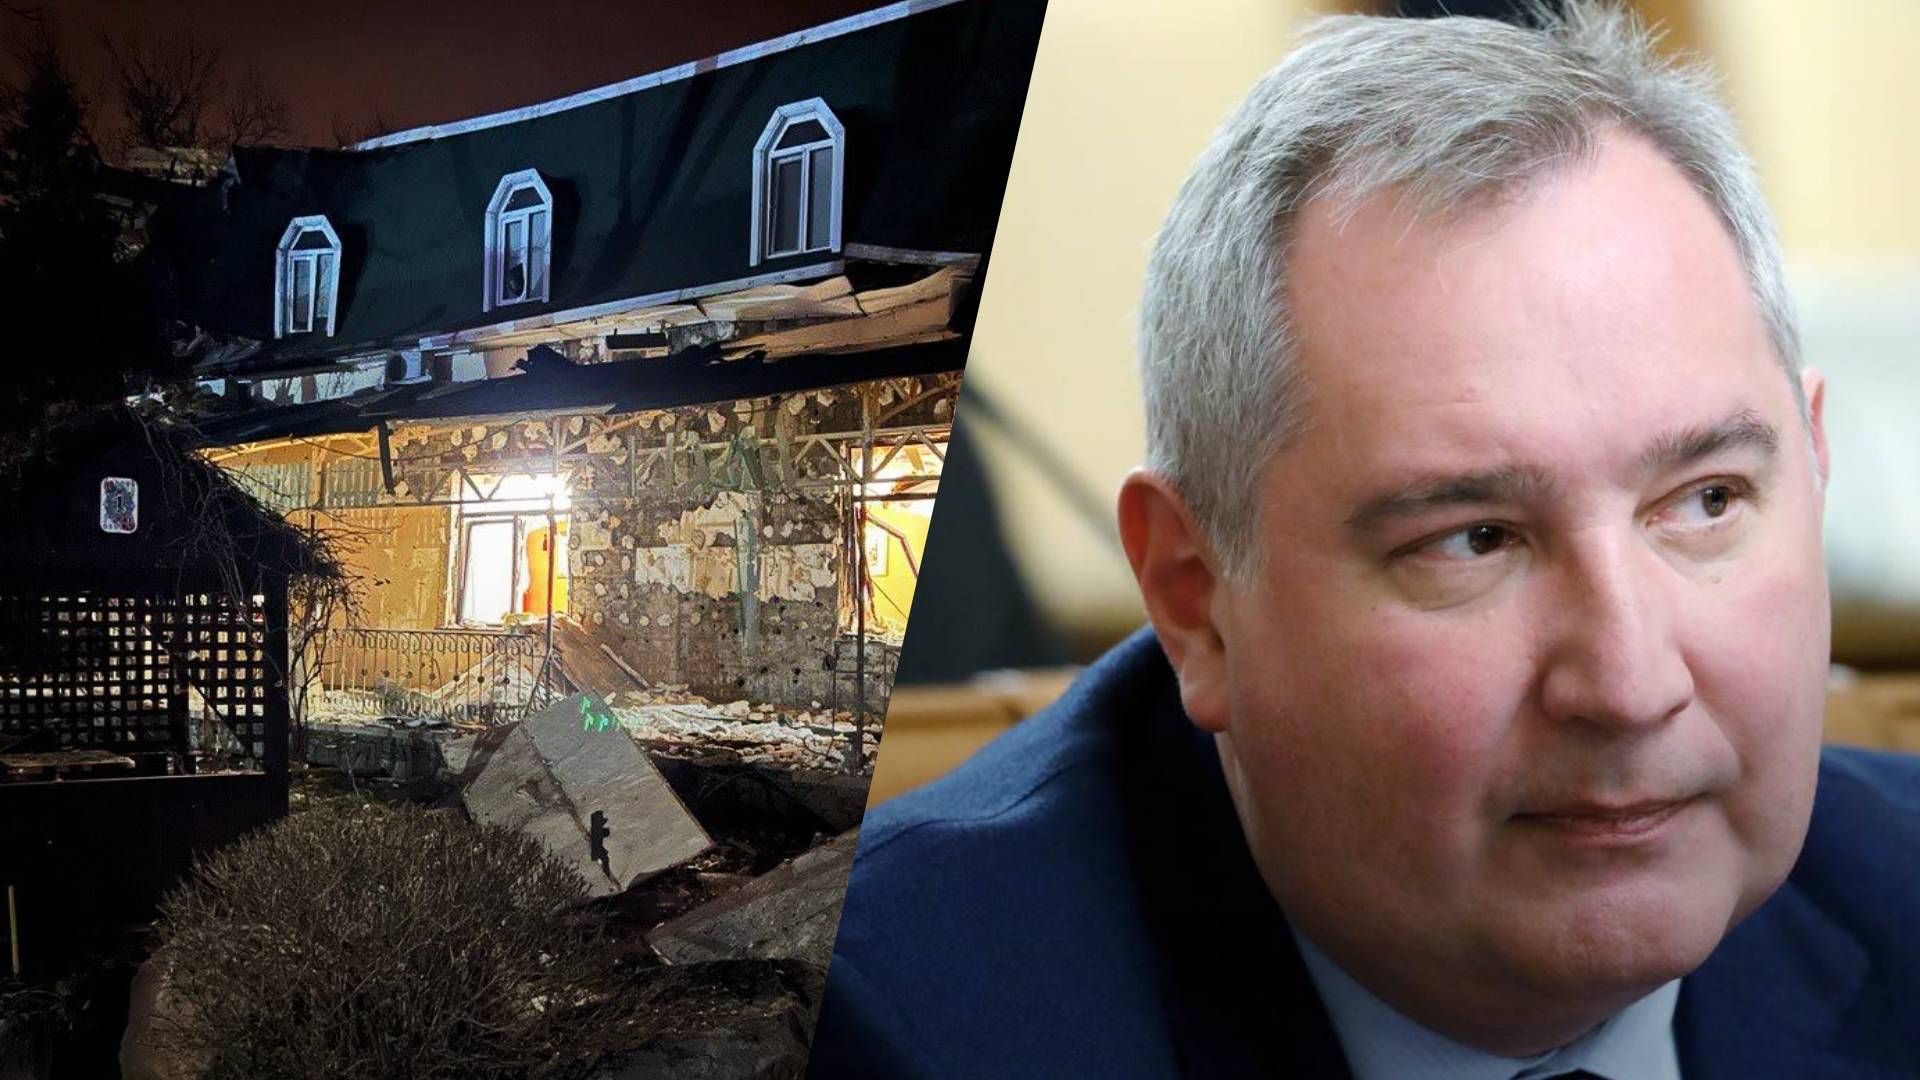 Рогозін поранений — у Донецьку обстріляли ресторан Шеш-Беш